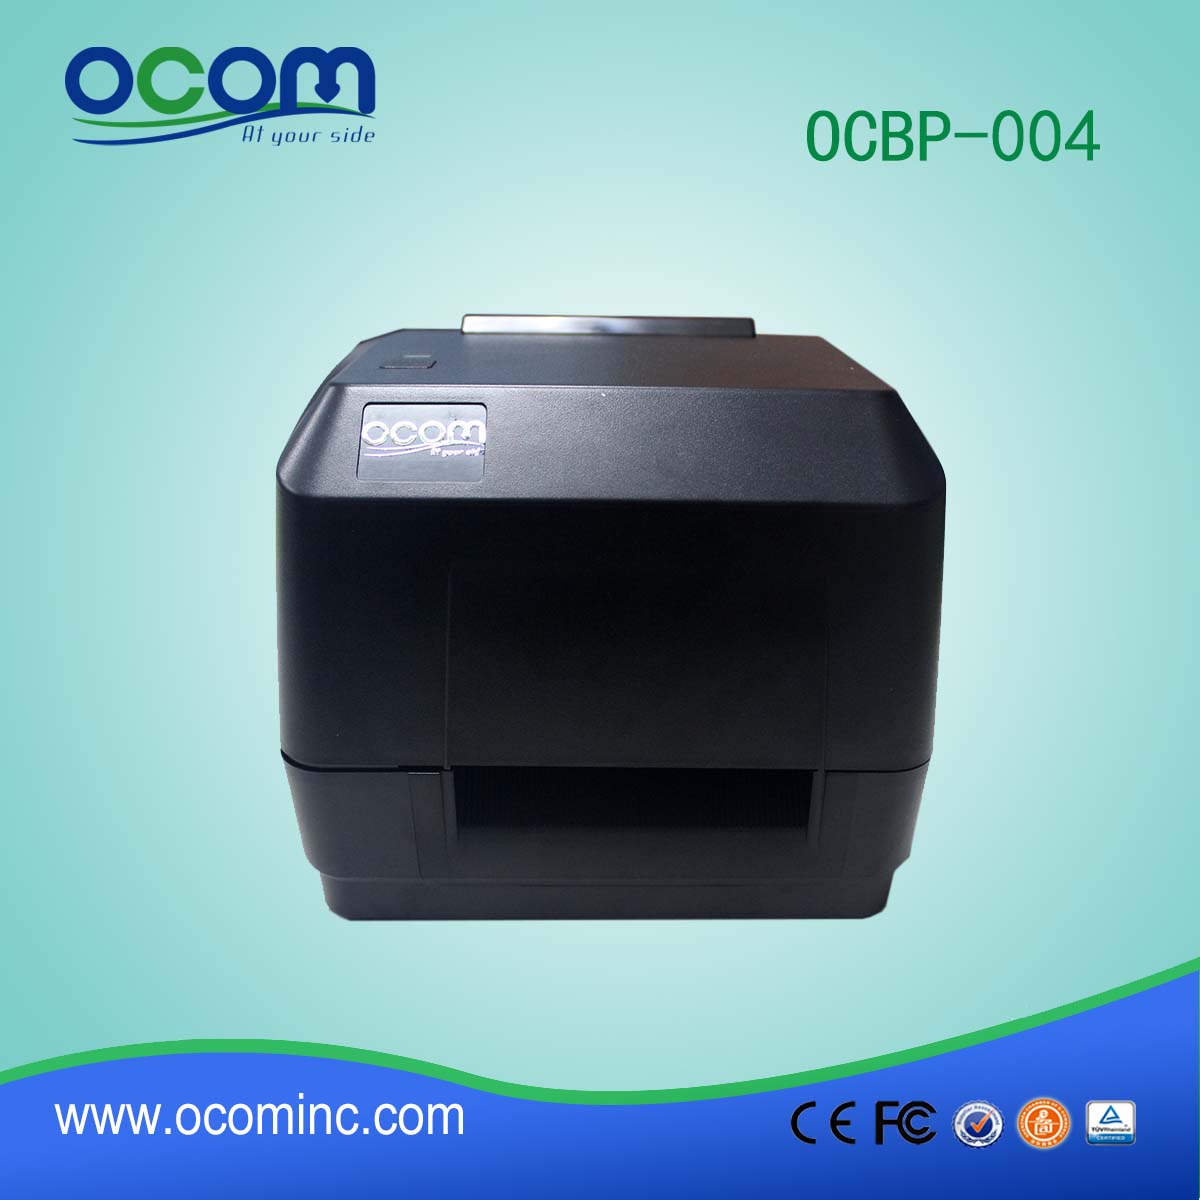 OCBP-004B-U 300DPI USB-принтер с термопереносом для переноса данных